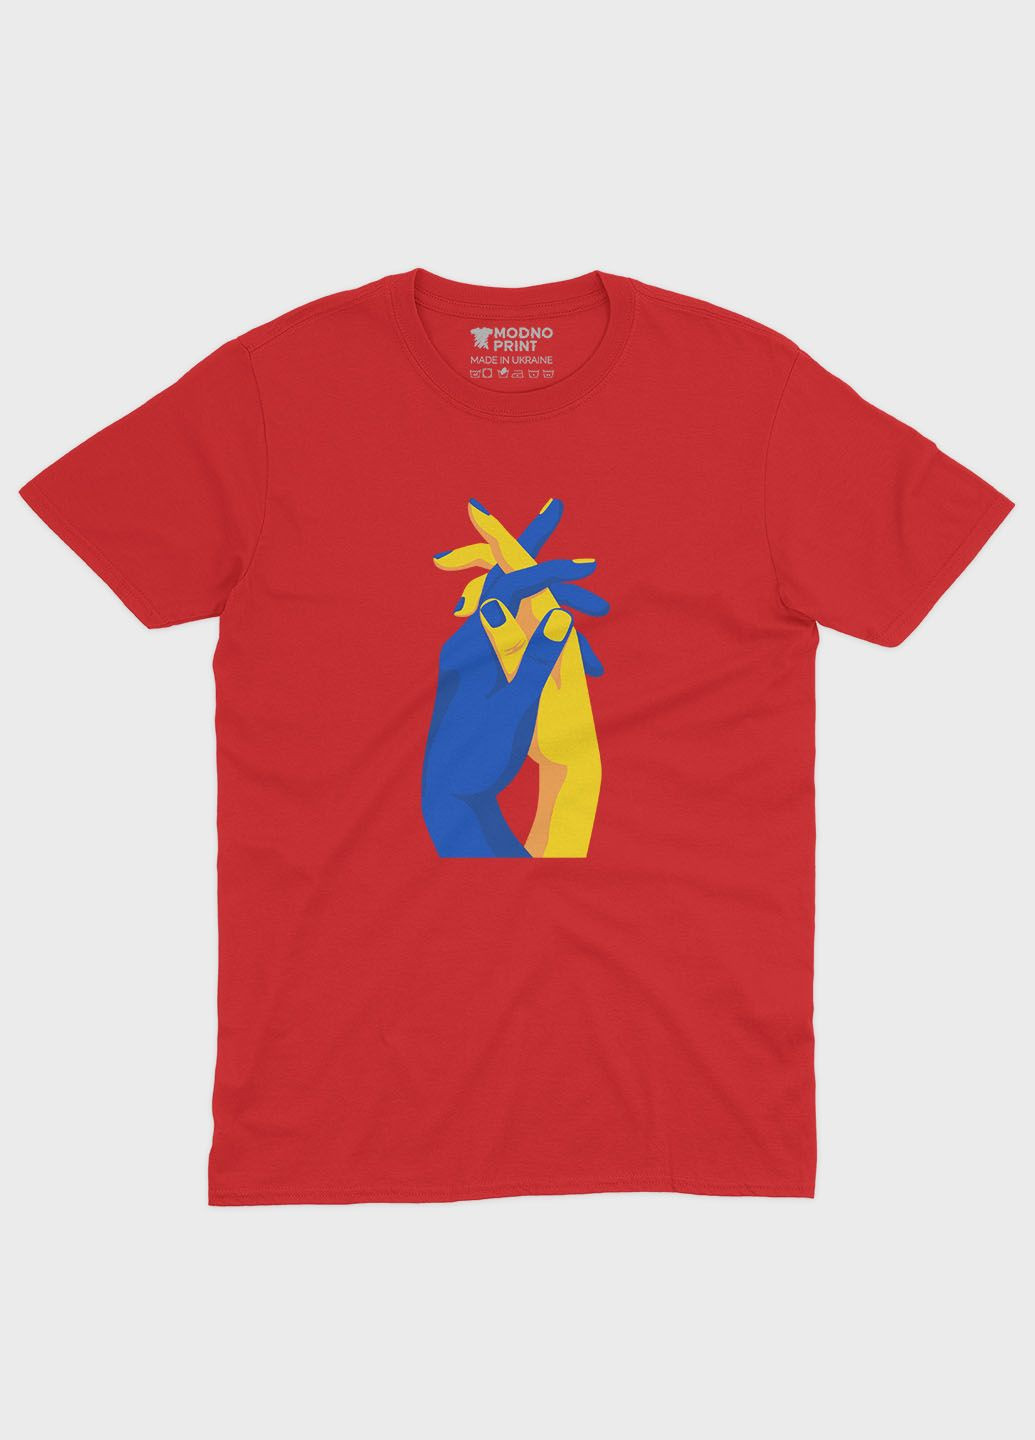 Красная демисезонная футболка для мальчика с патриотическим принтом лодони (ts001-2-sre-005-1-032-b) Modno